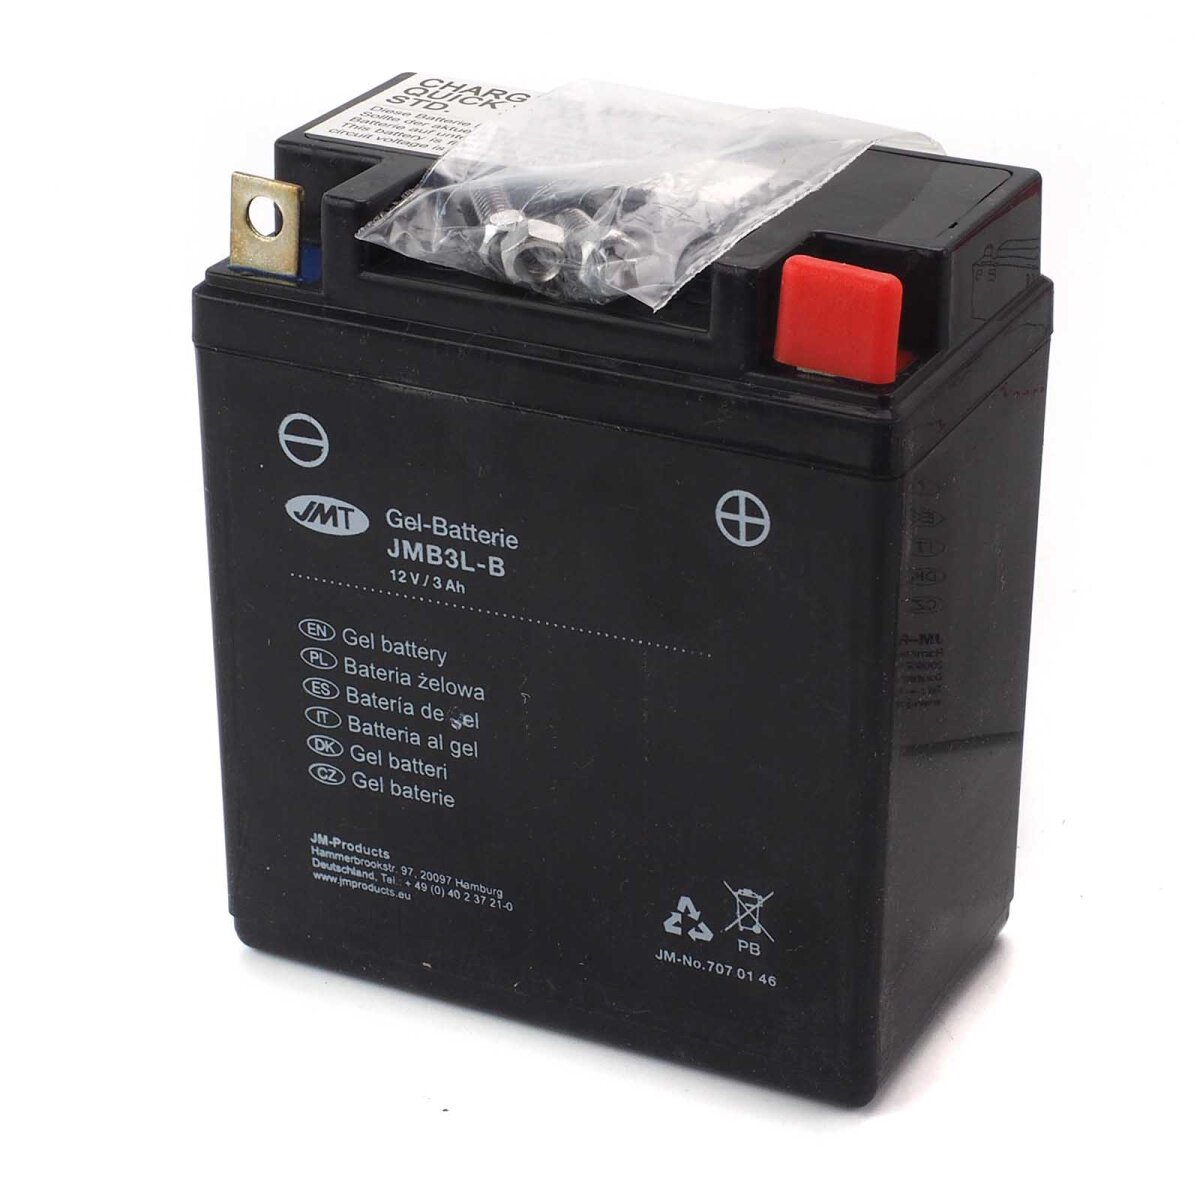 Gel Battery YB3L-B JMB3L-B, 22,87 €